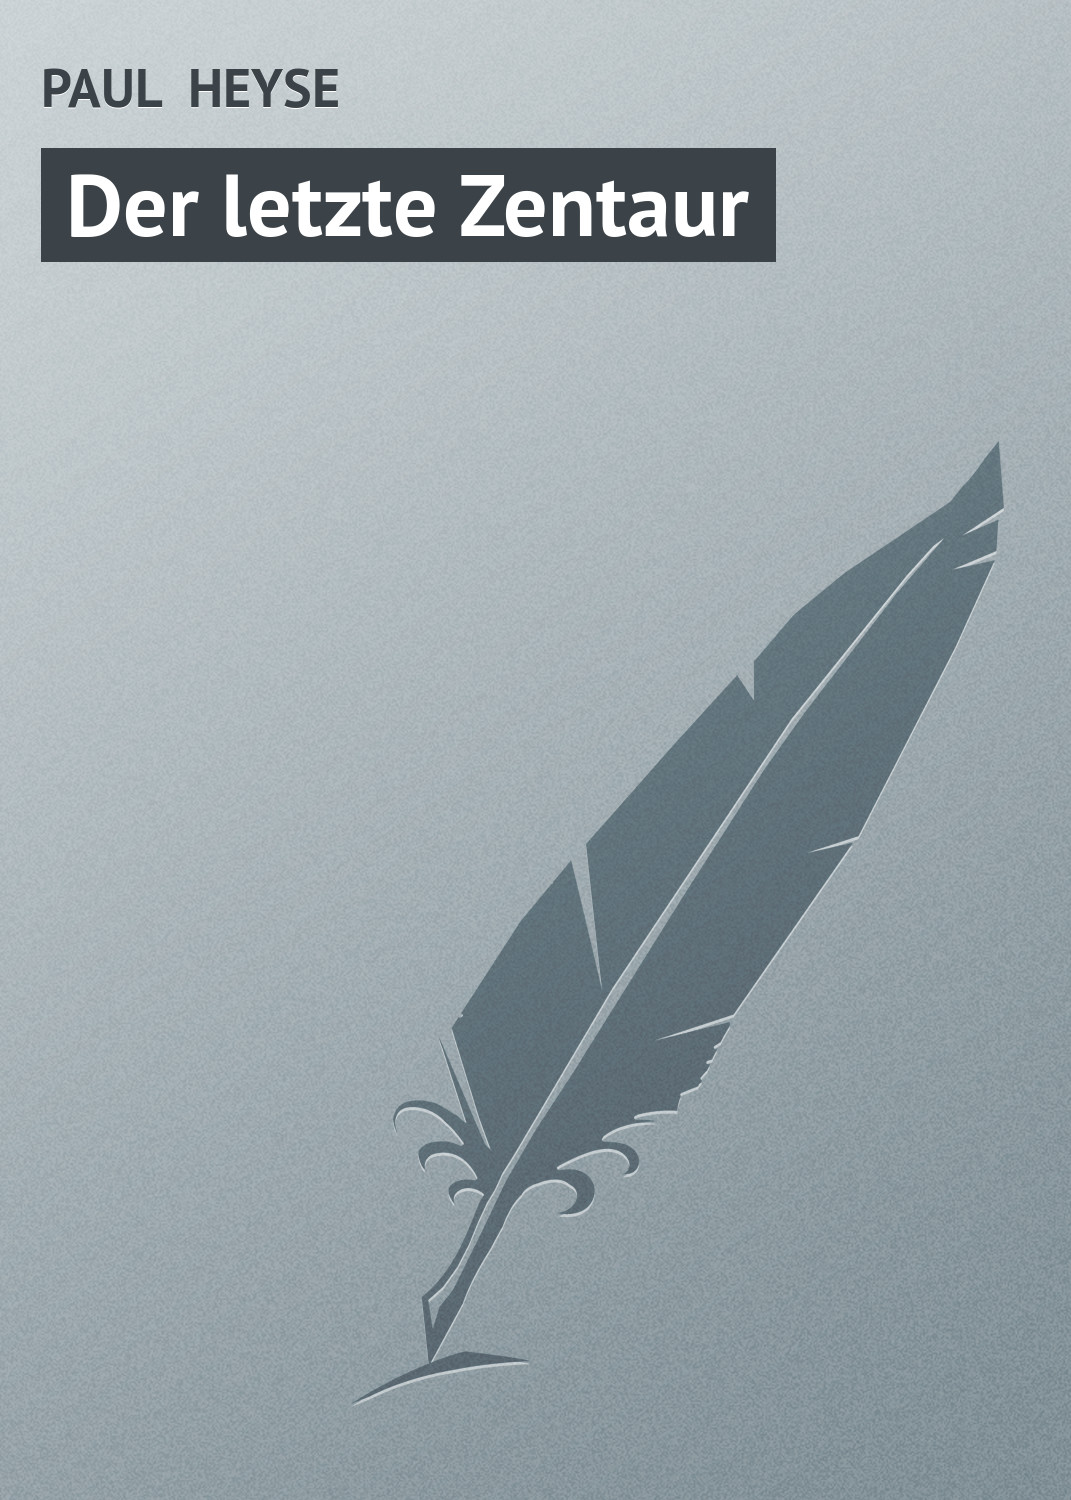 Книга Der letzte Zentaur из серии , созданная PAUL HEYSE, может относится к жанру Зарубежная старинная литература, Зарубежная классика. Стоимость электронной книги Der letzte Zentaur с идентификатором 21107198 составляет 5.99 руб.